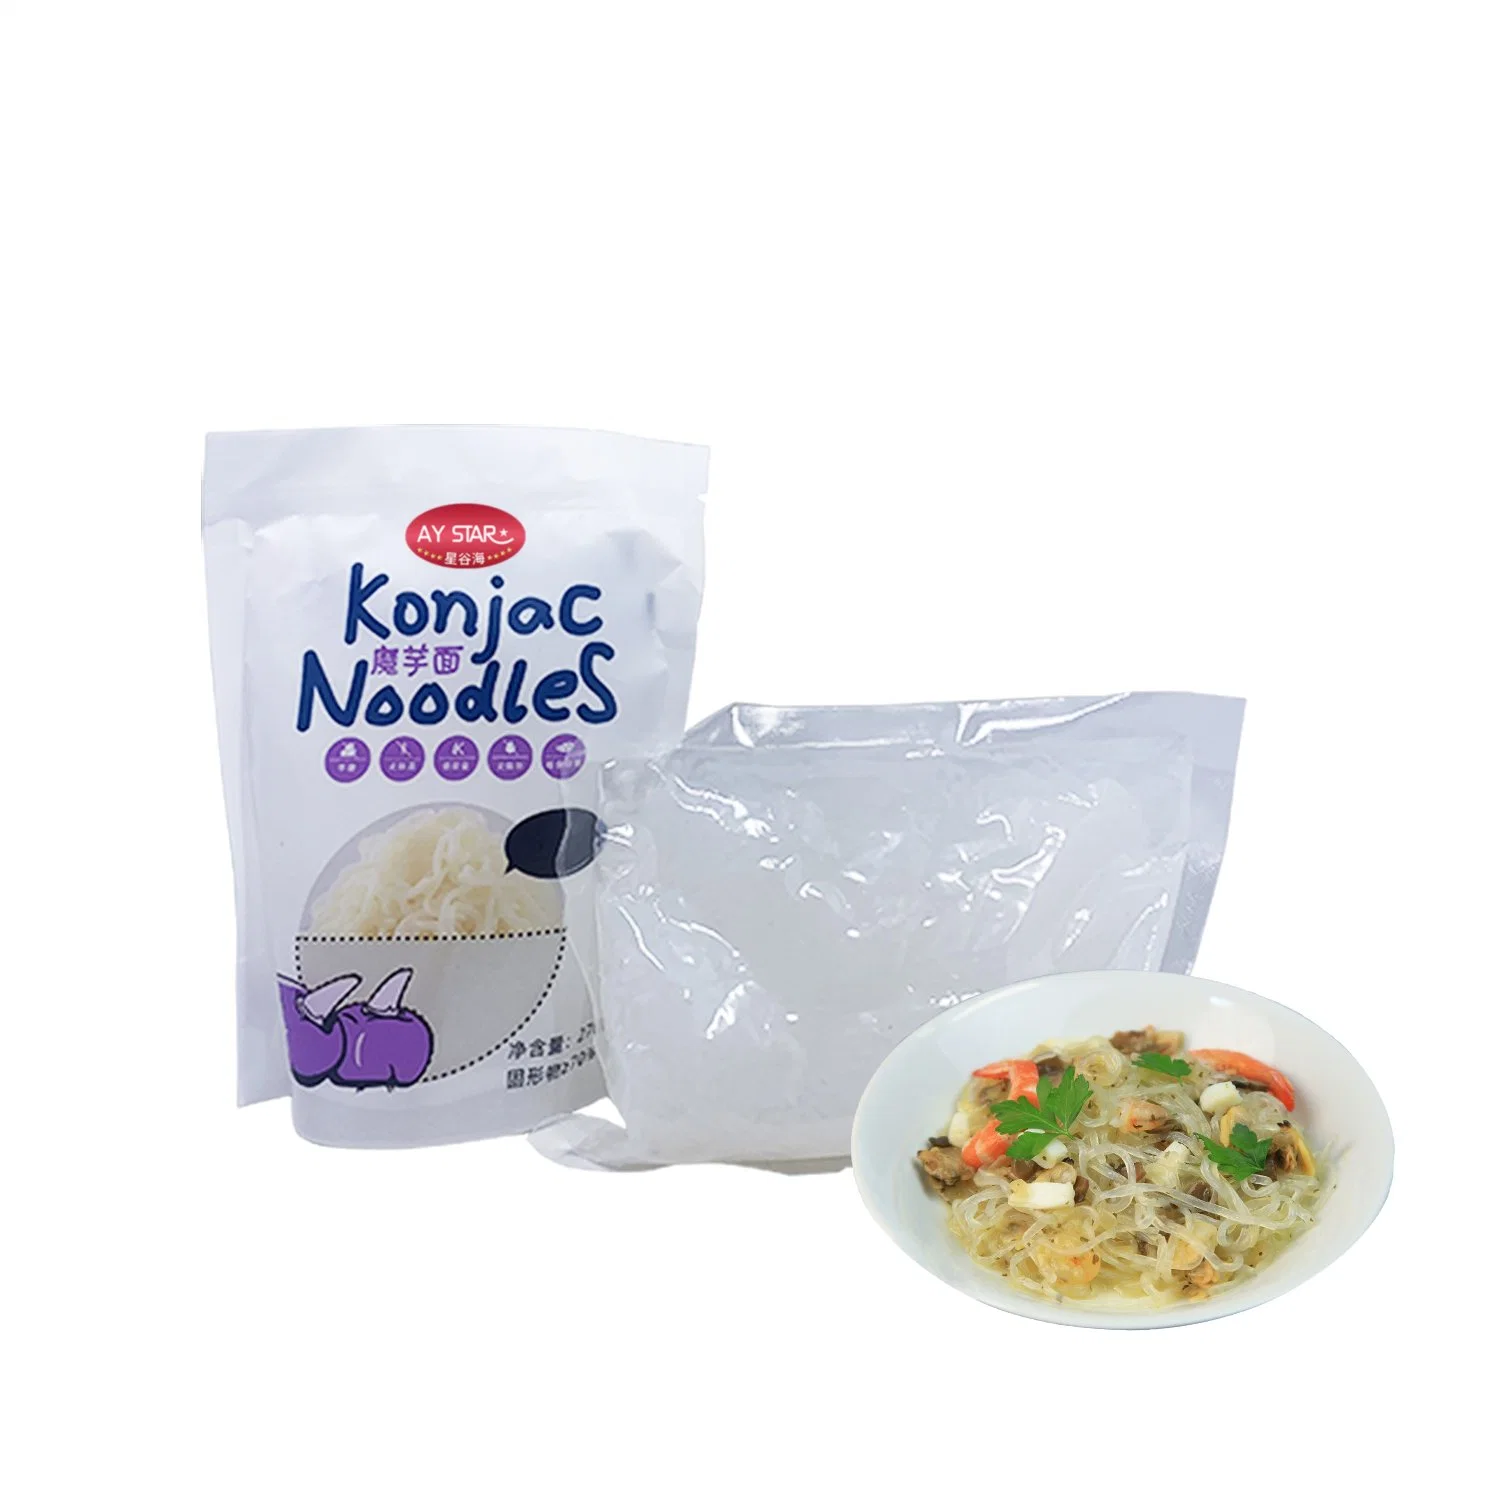 Halal de fábrica de fideos secos mayorista bajos en calorías Konjac.